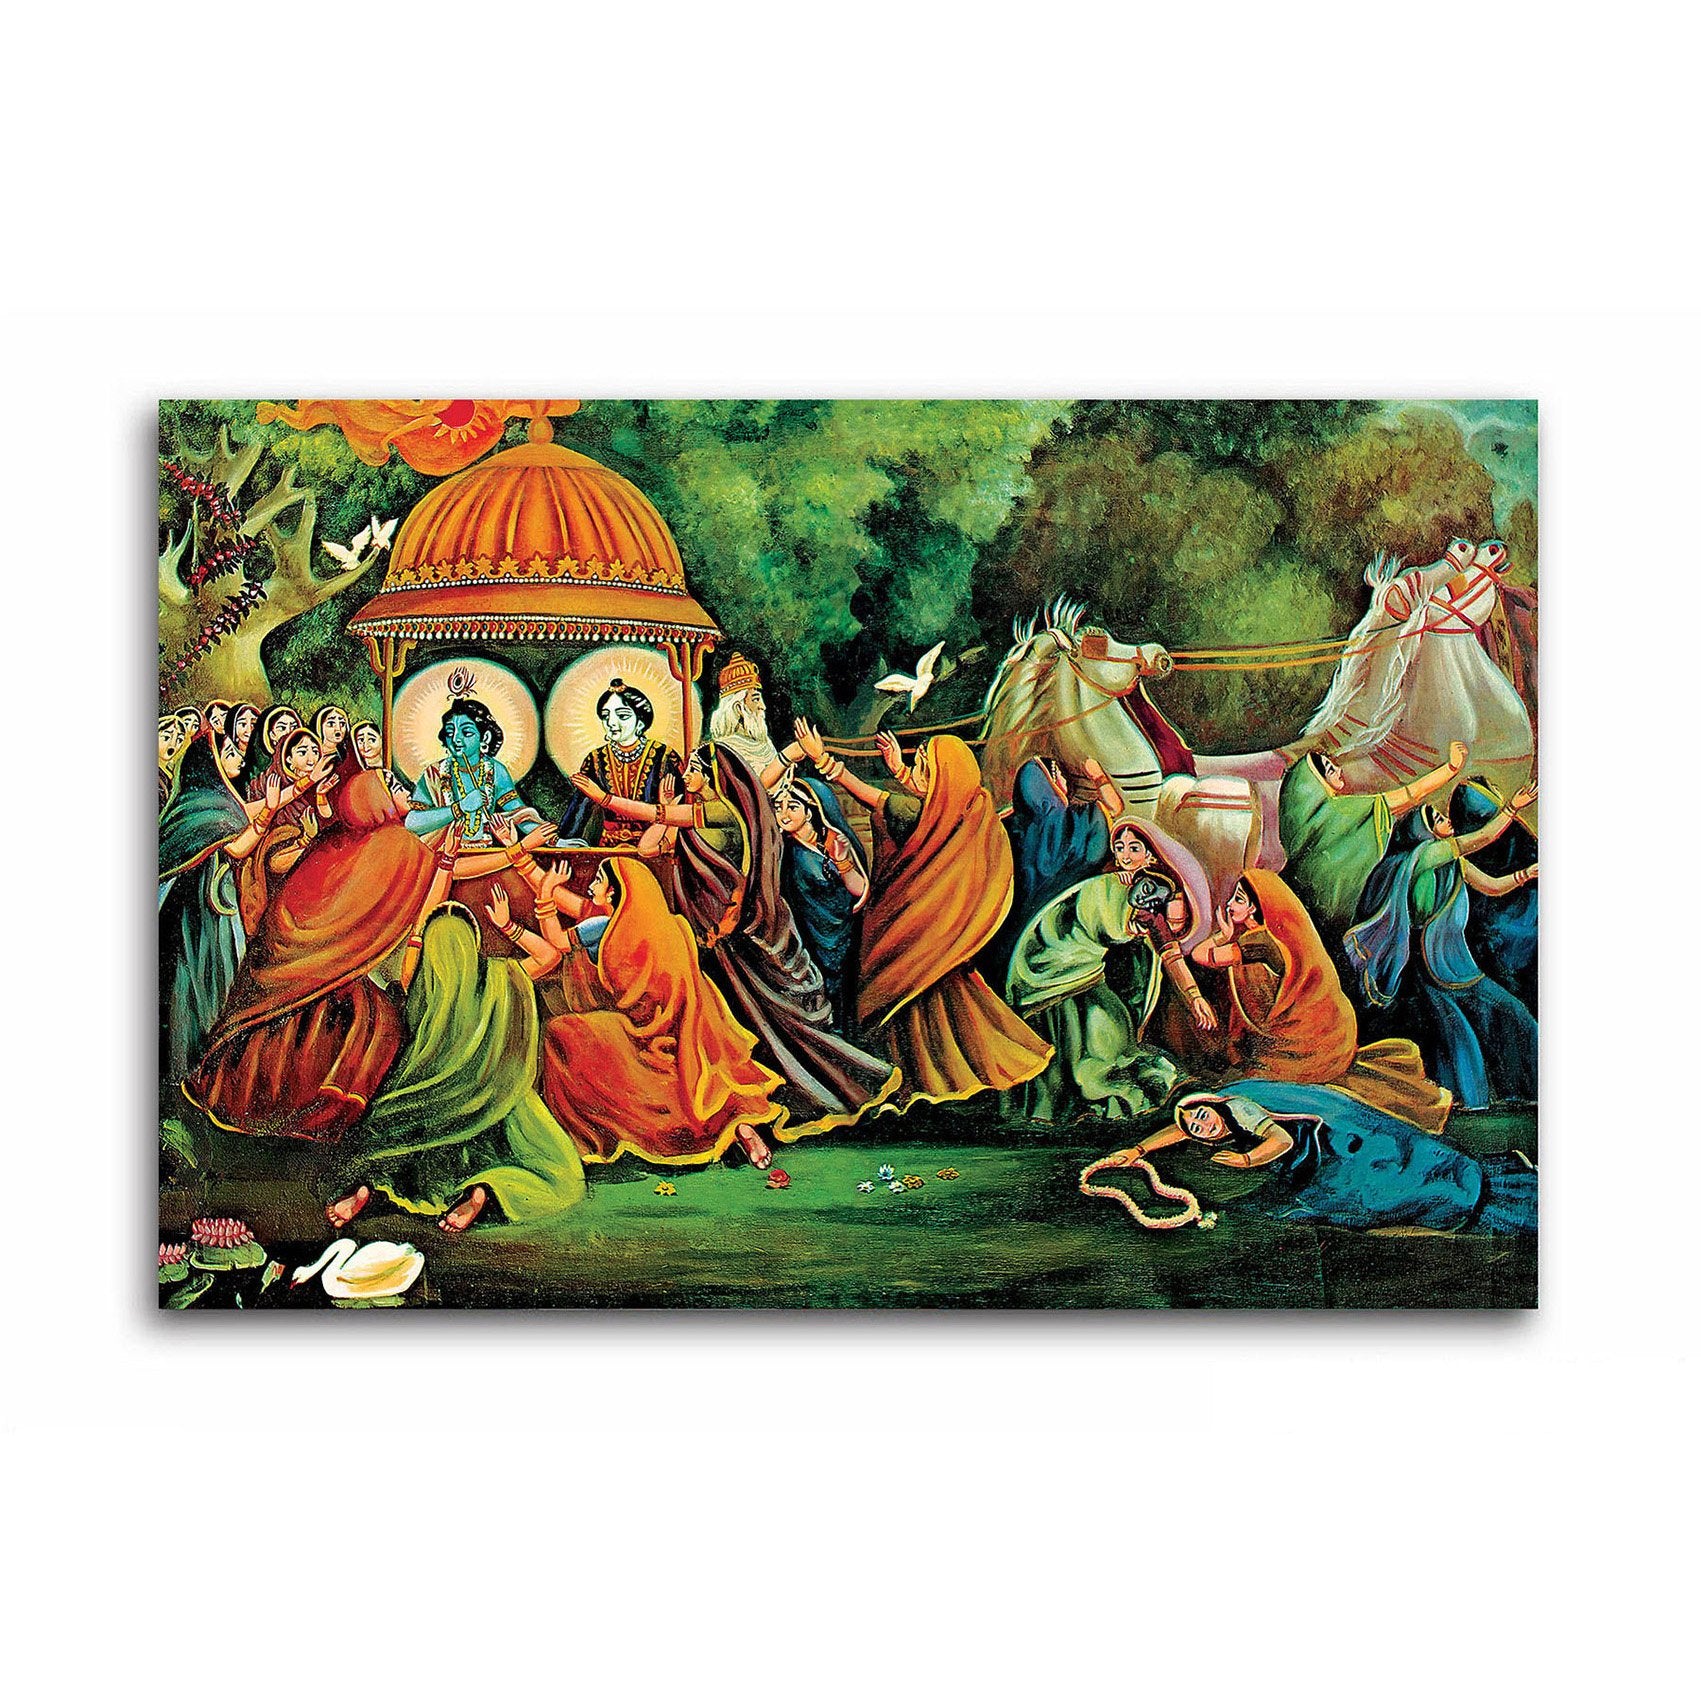 Shri Radha And Krishna With Gopies